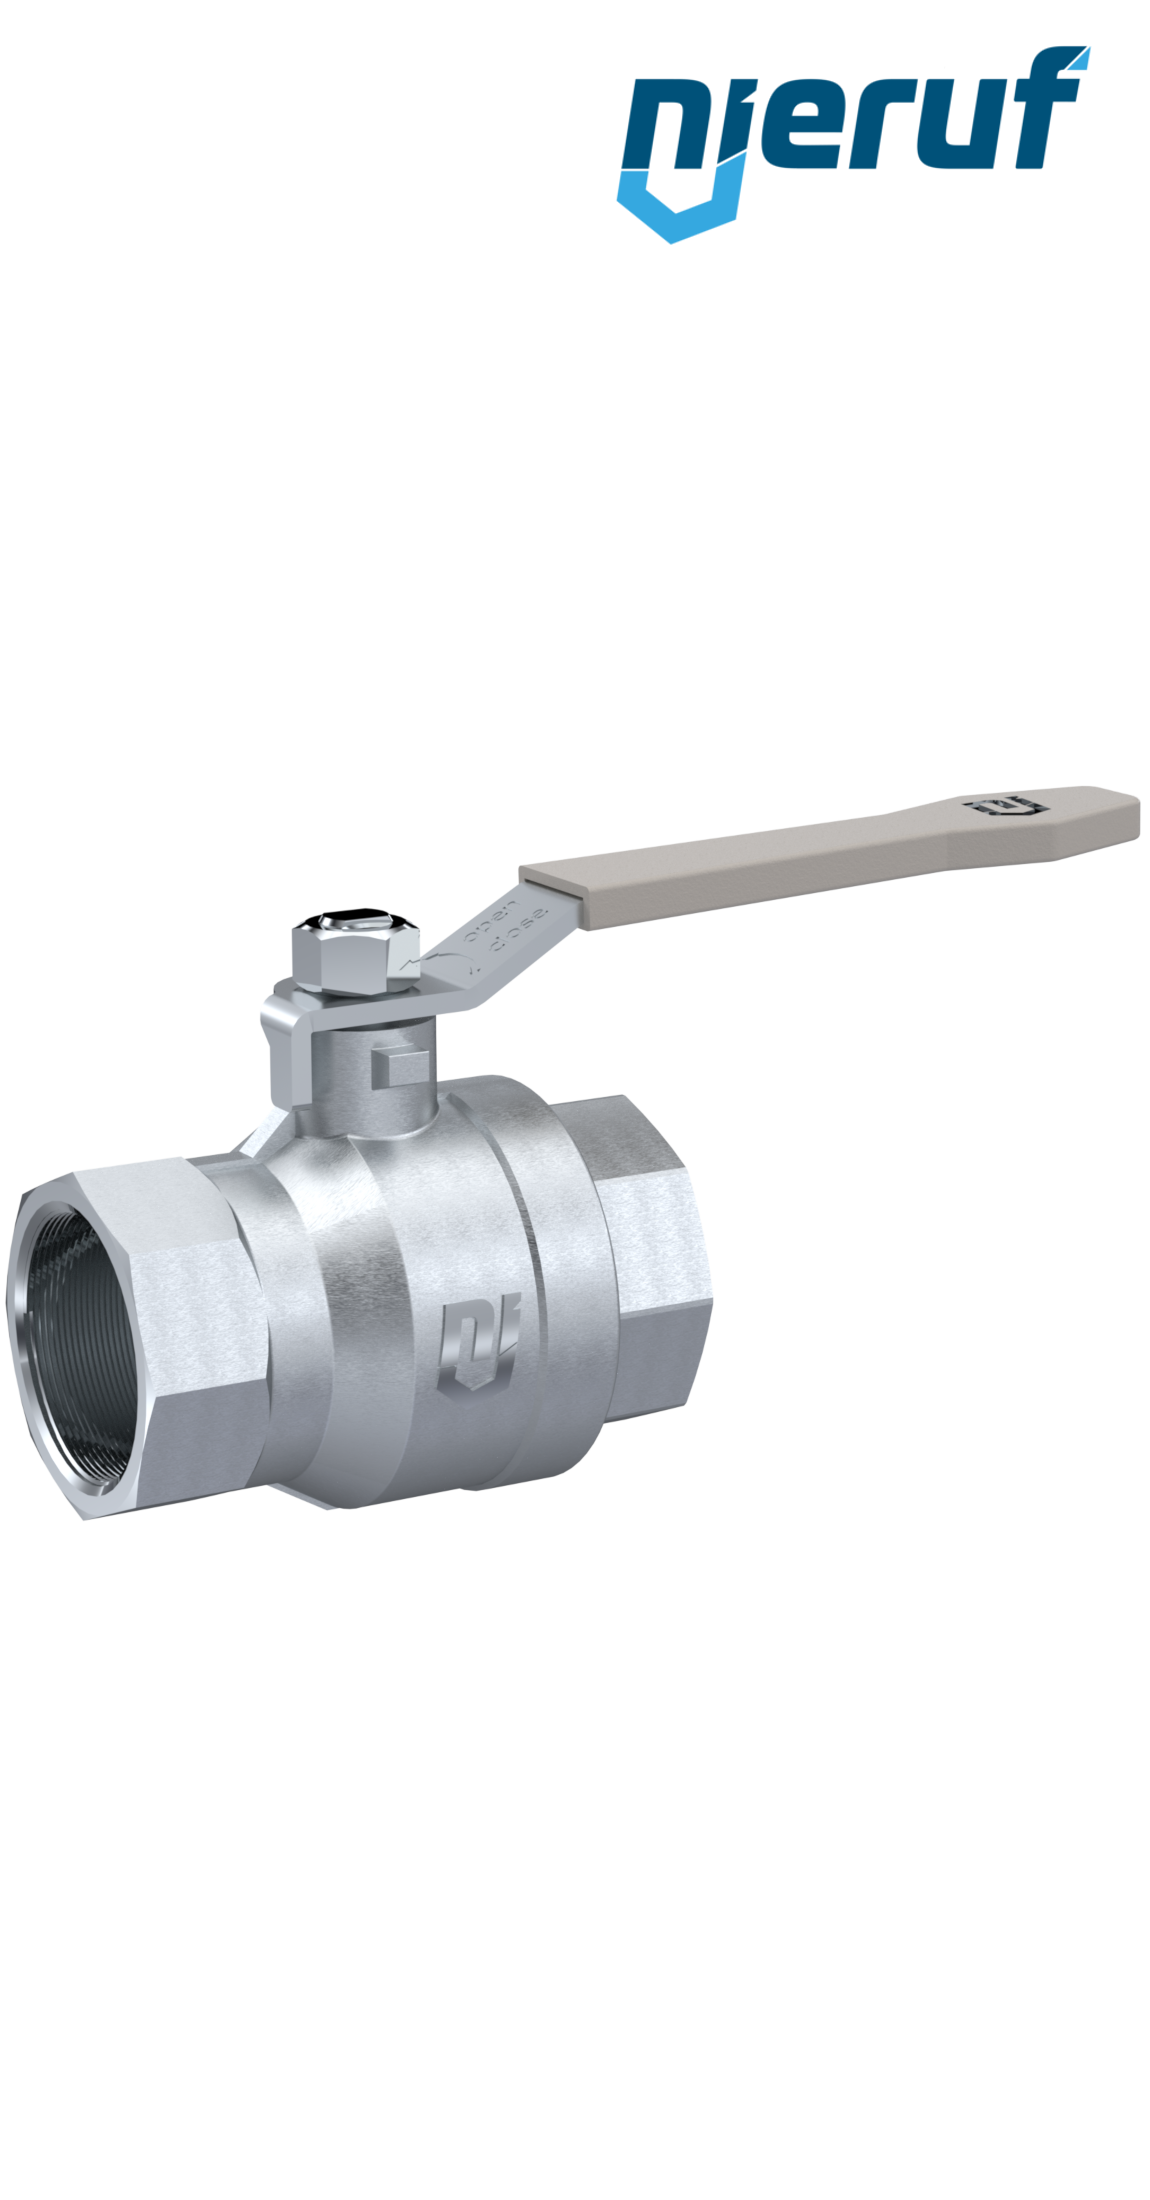 ball valve made of brass DN20 - 3/4" inch GK02 gas & water DVGW